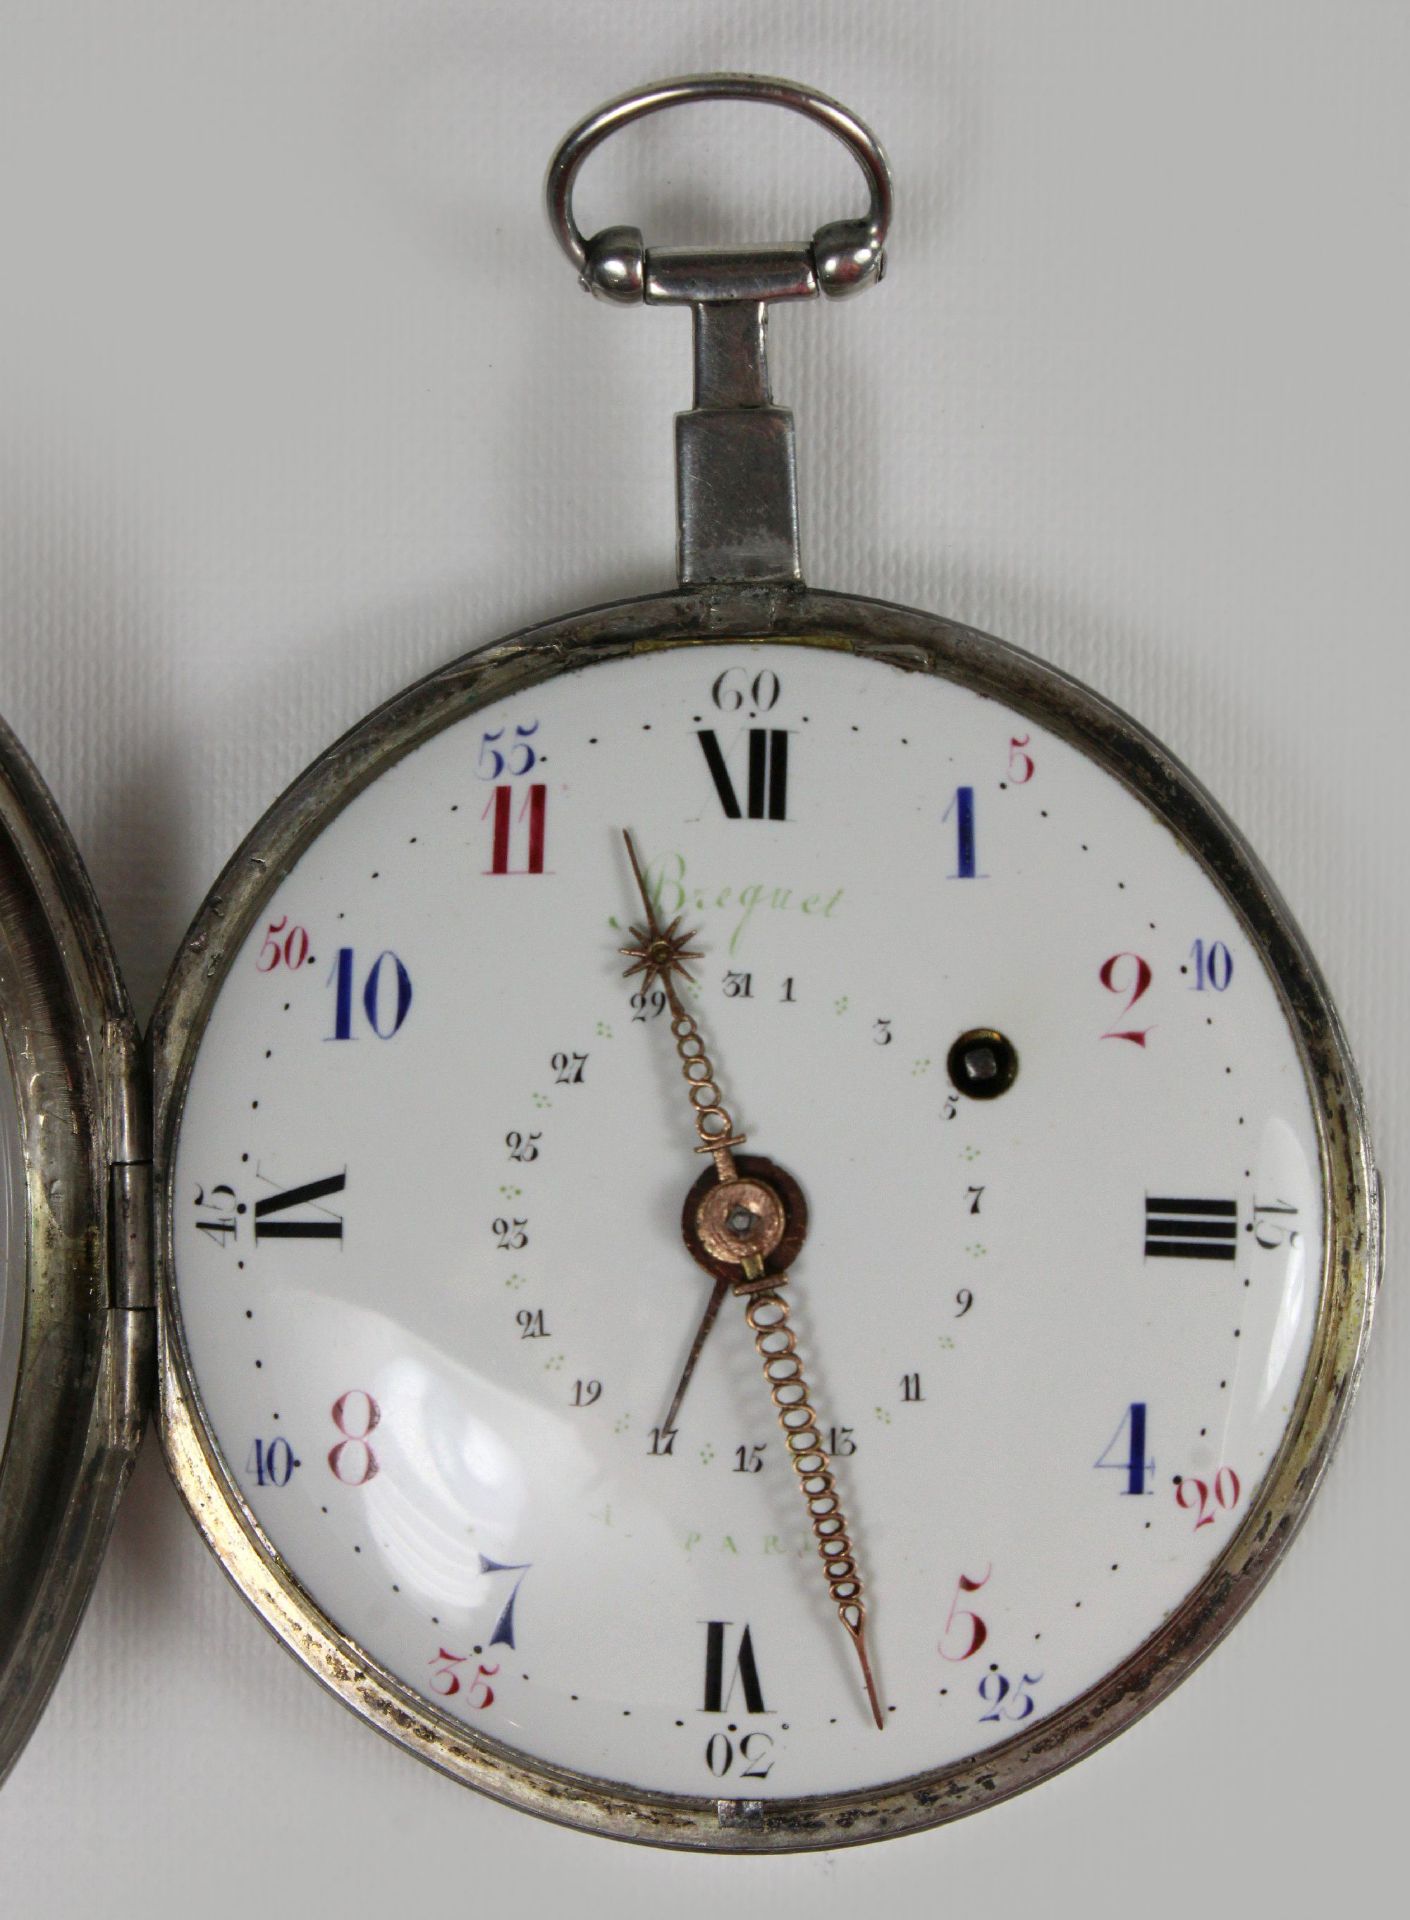 Breguet Schlüsseluhr, um 1800, Frankreich, Silber, Uhrwerk bez. Breguet a Paris, Gehäuse-Nr.: 5946, - Bild 2 aus 5